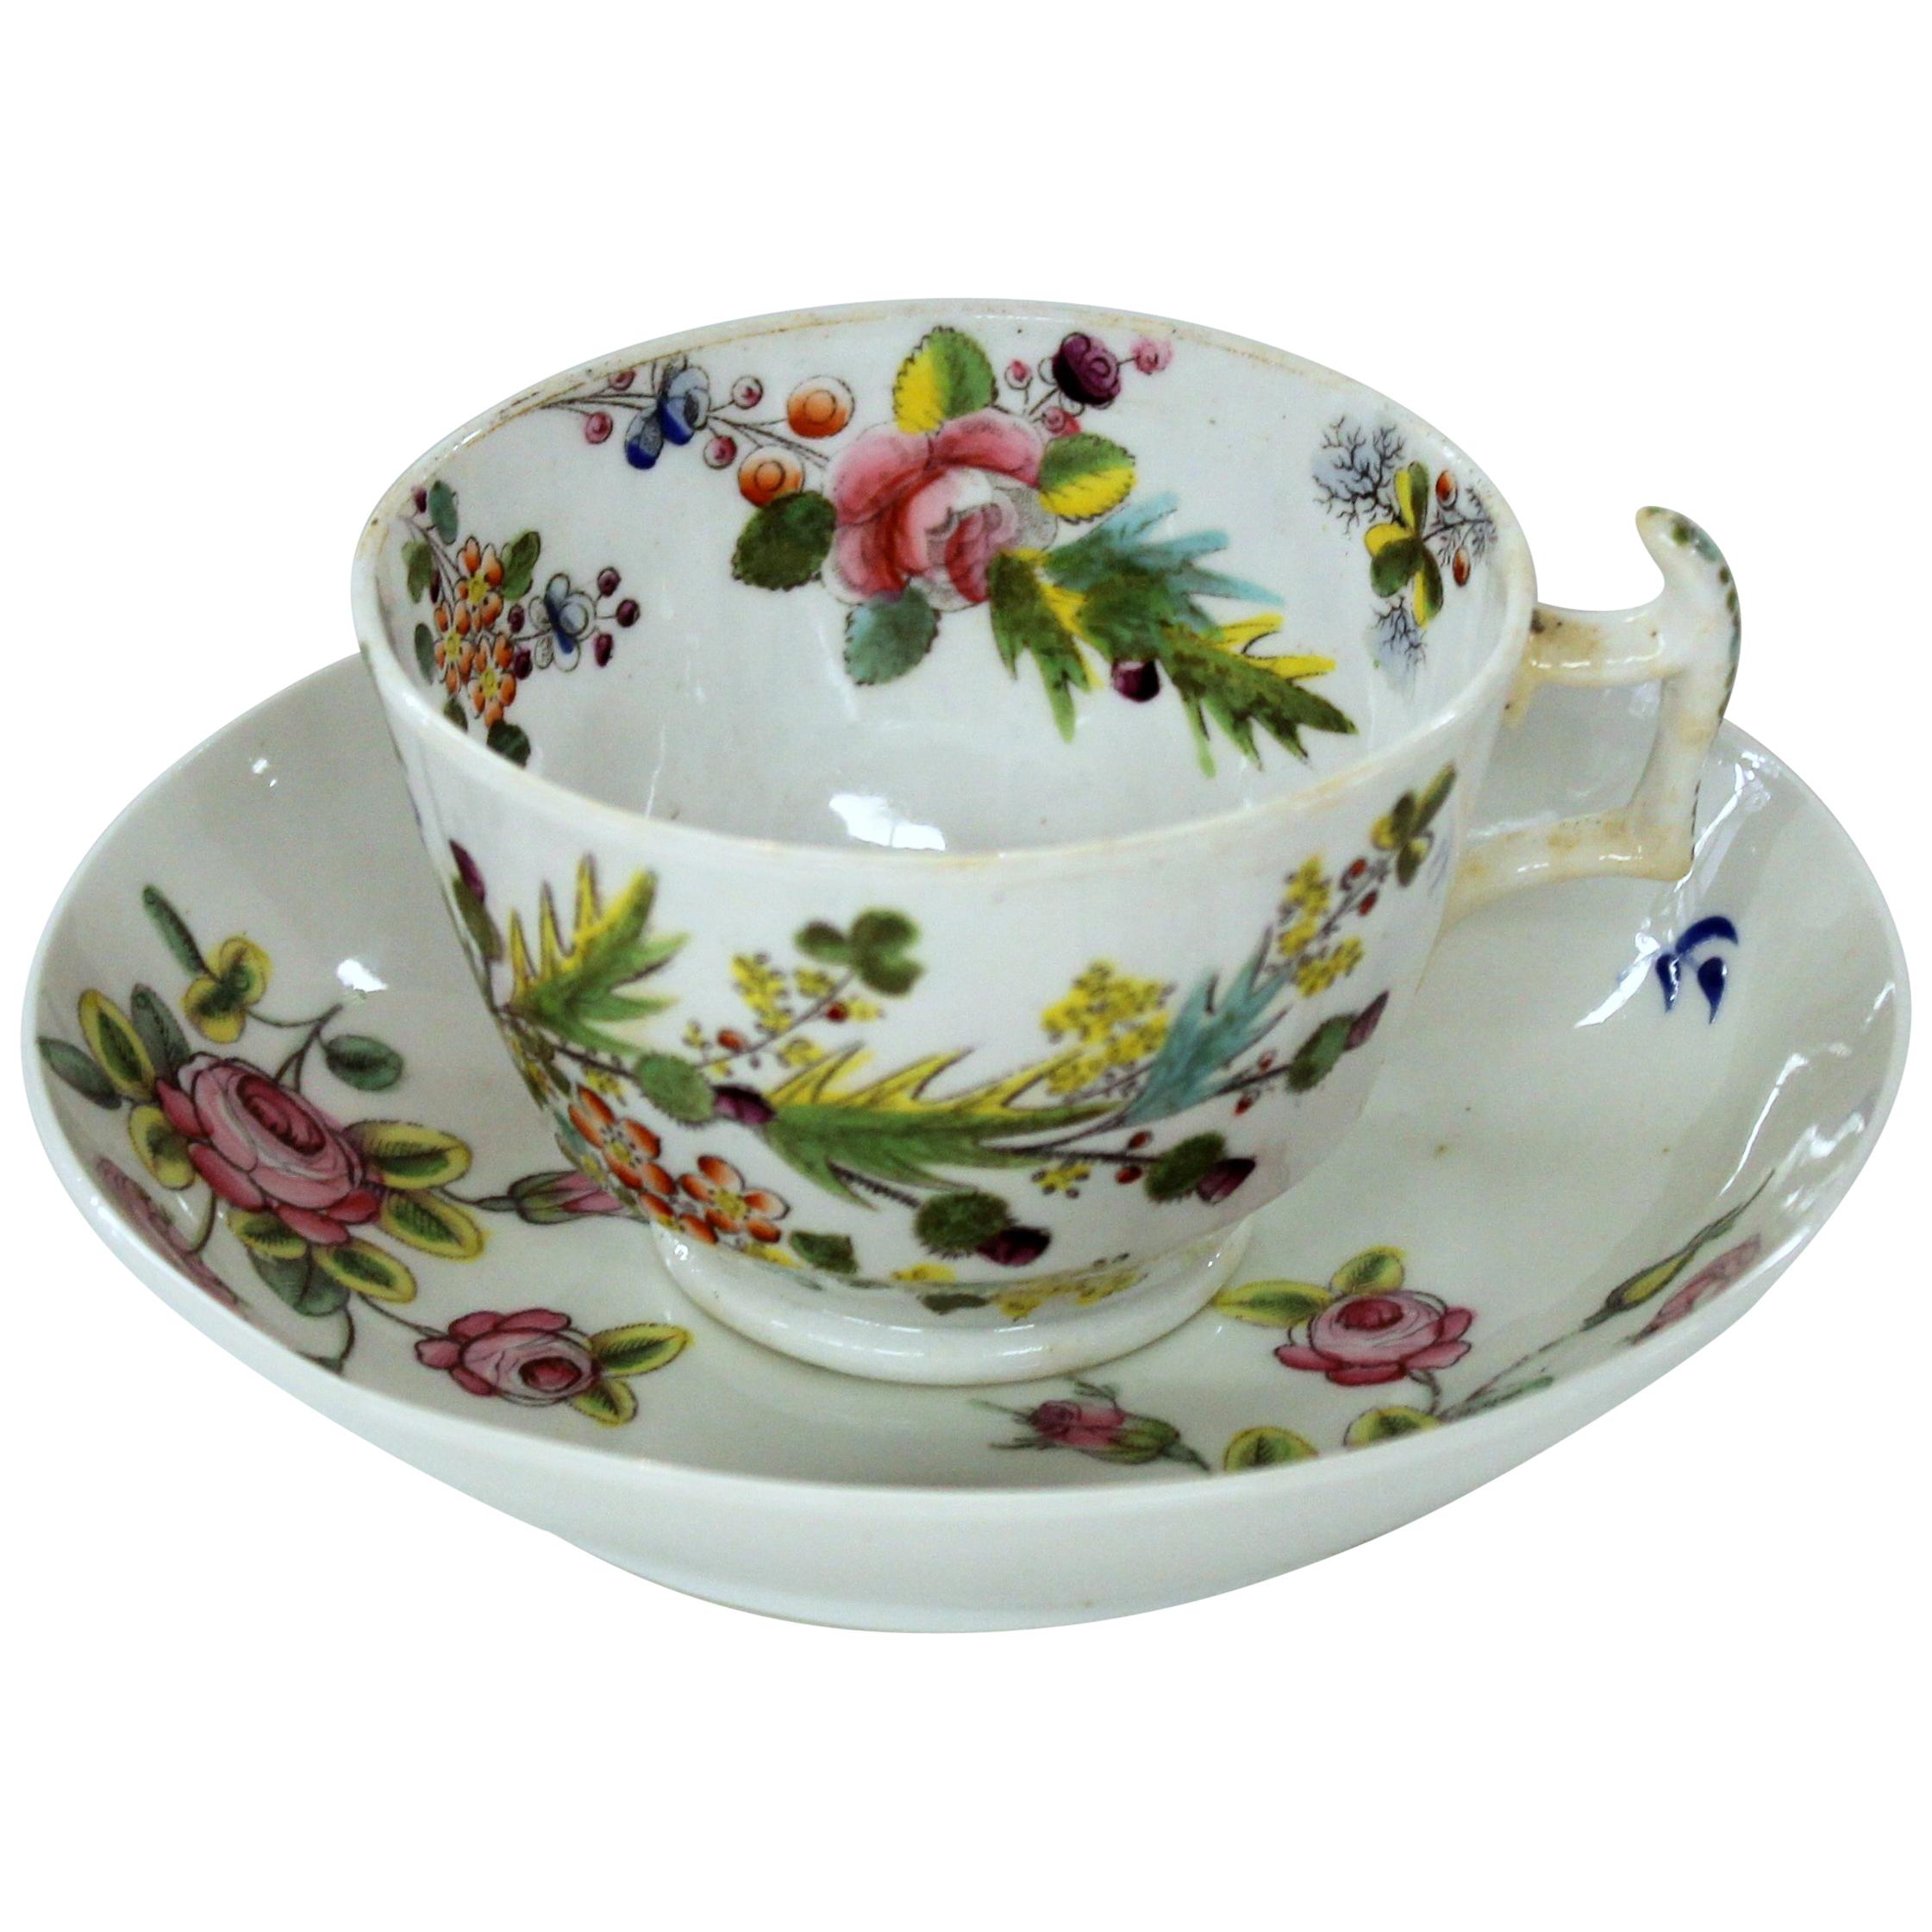 Englische Tasse und Untertasse aus New Hall-Porzellan mit Blumendekor aus dem frühen 19. Jahrhundert